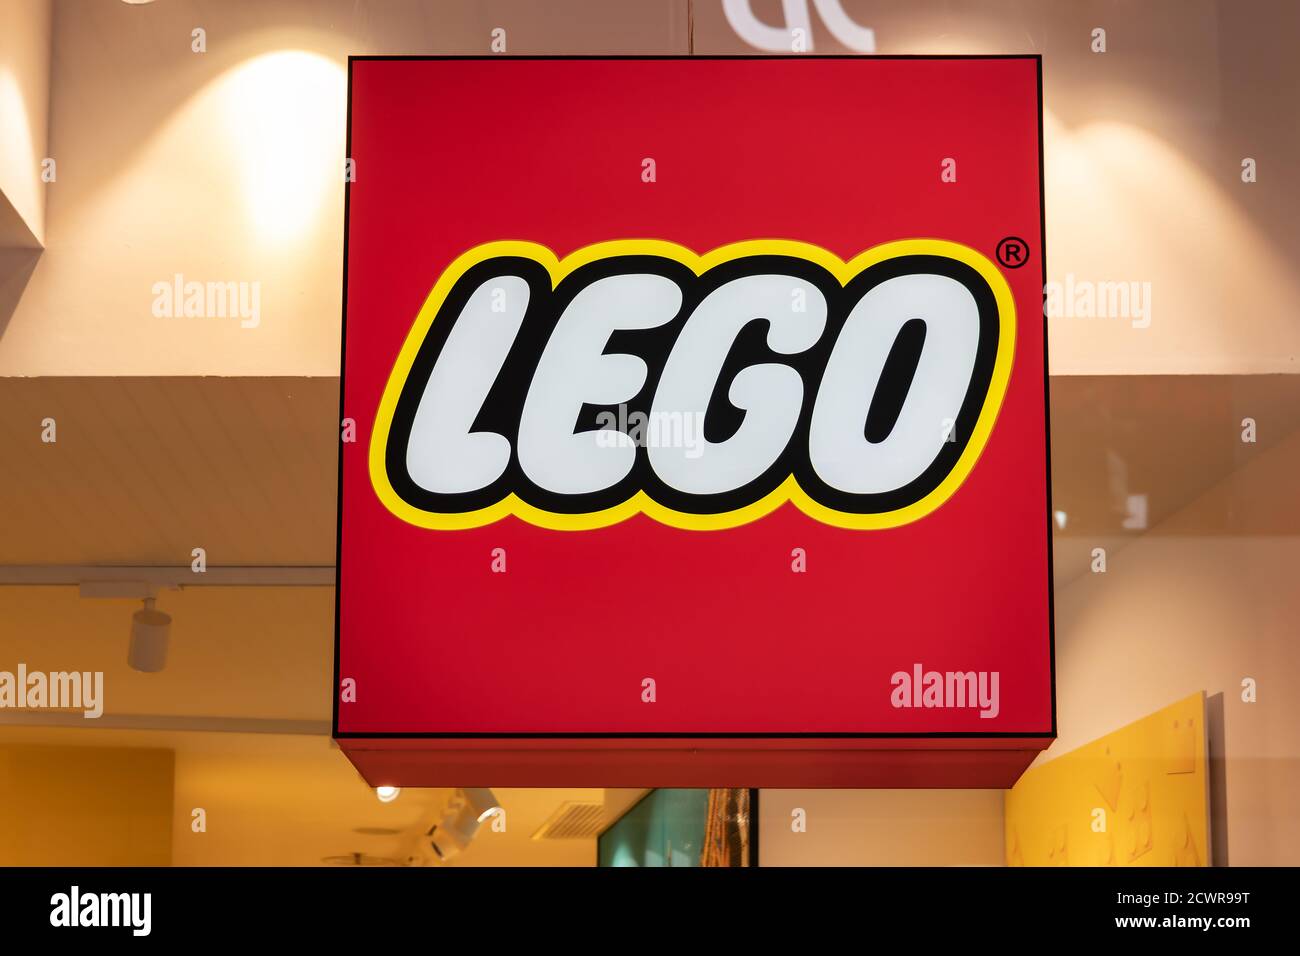 Séville, Espagne - 18 septembre 2020 : l'entrée du magasin LEGO à l'intérieur du centre commercial de Lagoh Sevilla à Séville (Centro Comercial Lagoh Sevilla), et Banque D'Images